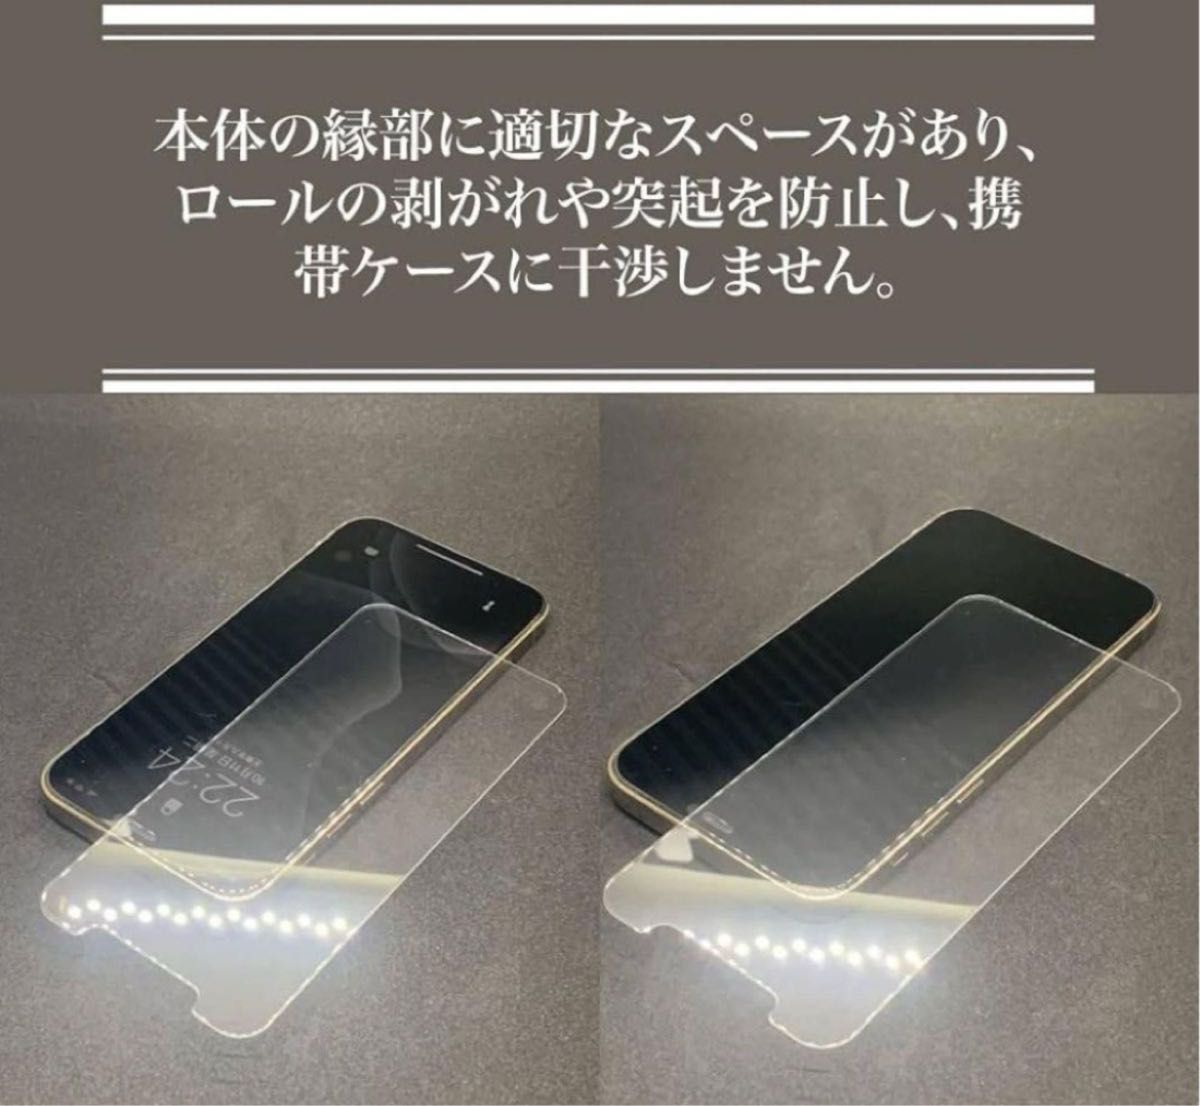 日本素材製 強化ガラス ガラスフィルム 旭硝子素材 強化ガラス カバー 保護フィルム iPhone14ProMax 液晶保護